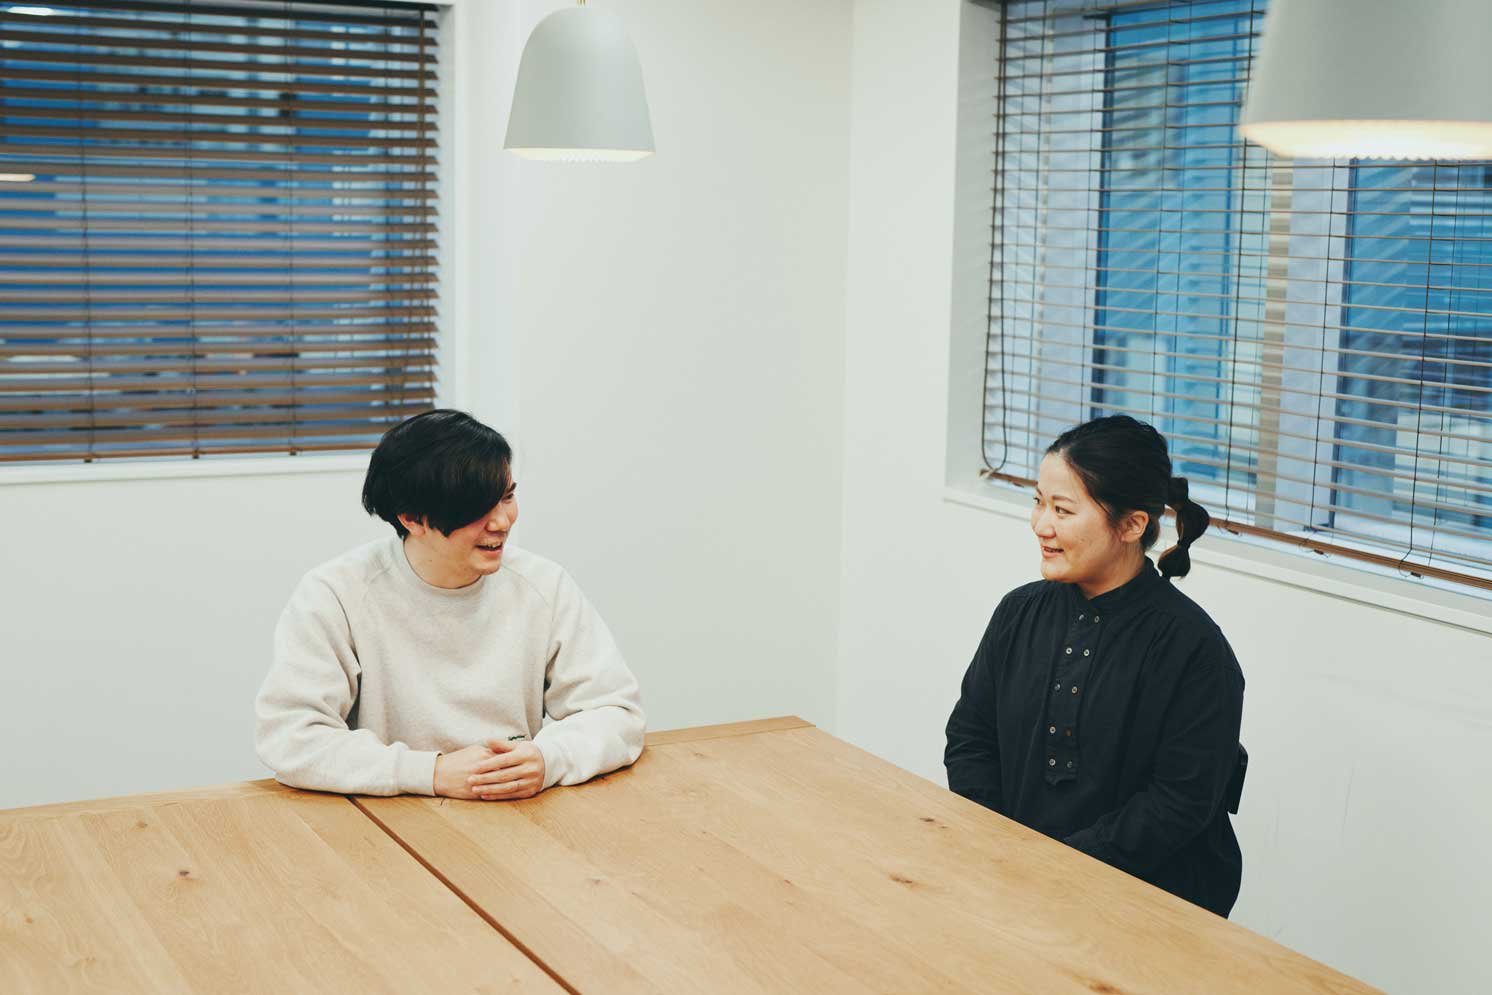 左から小川氏、田中氏 | Make New Magazine「未来の定番」をつくるために、パナソニックのリアルな姿を伝えるメディア